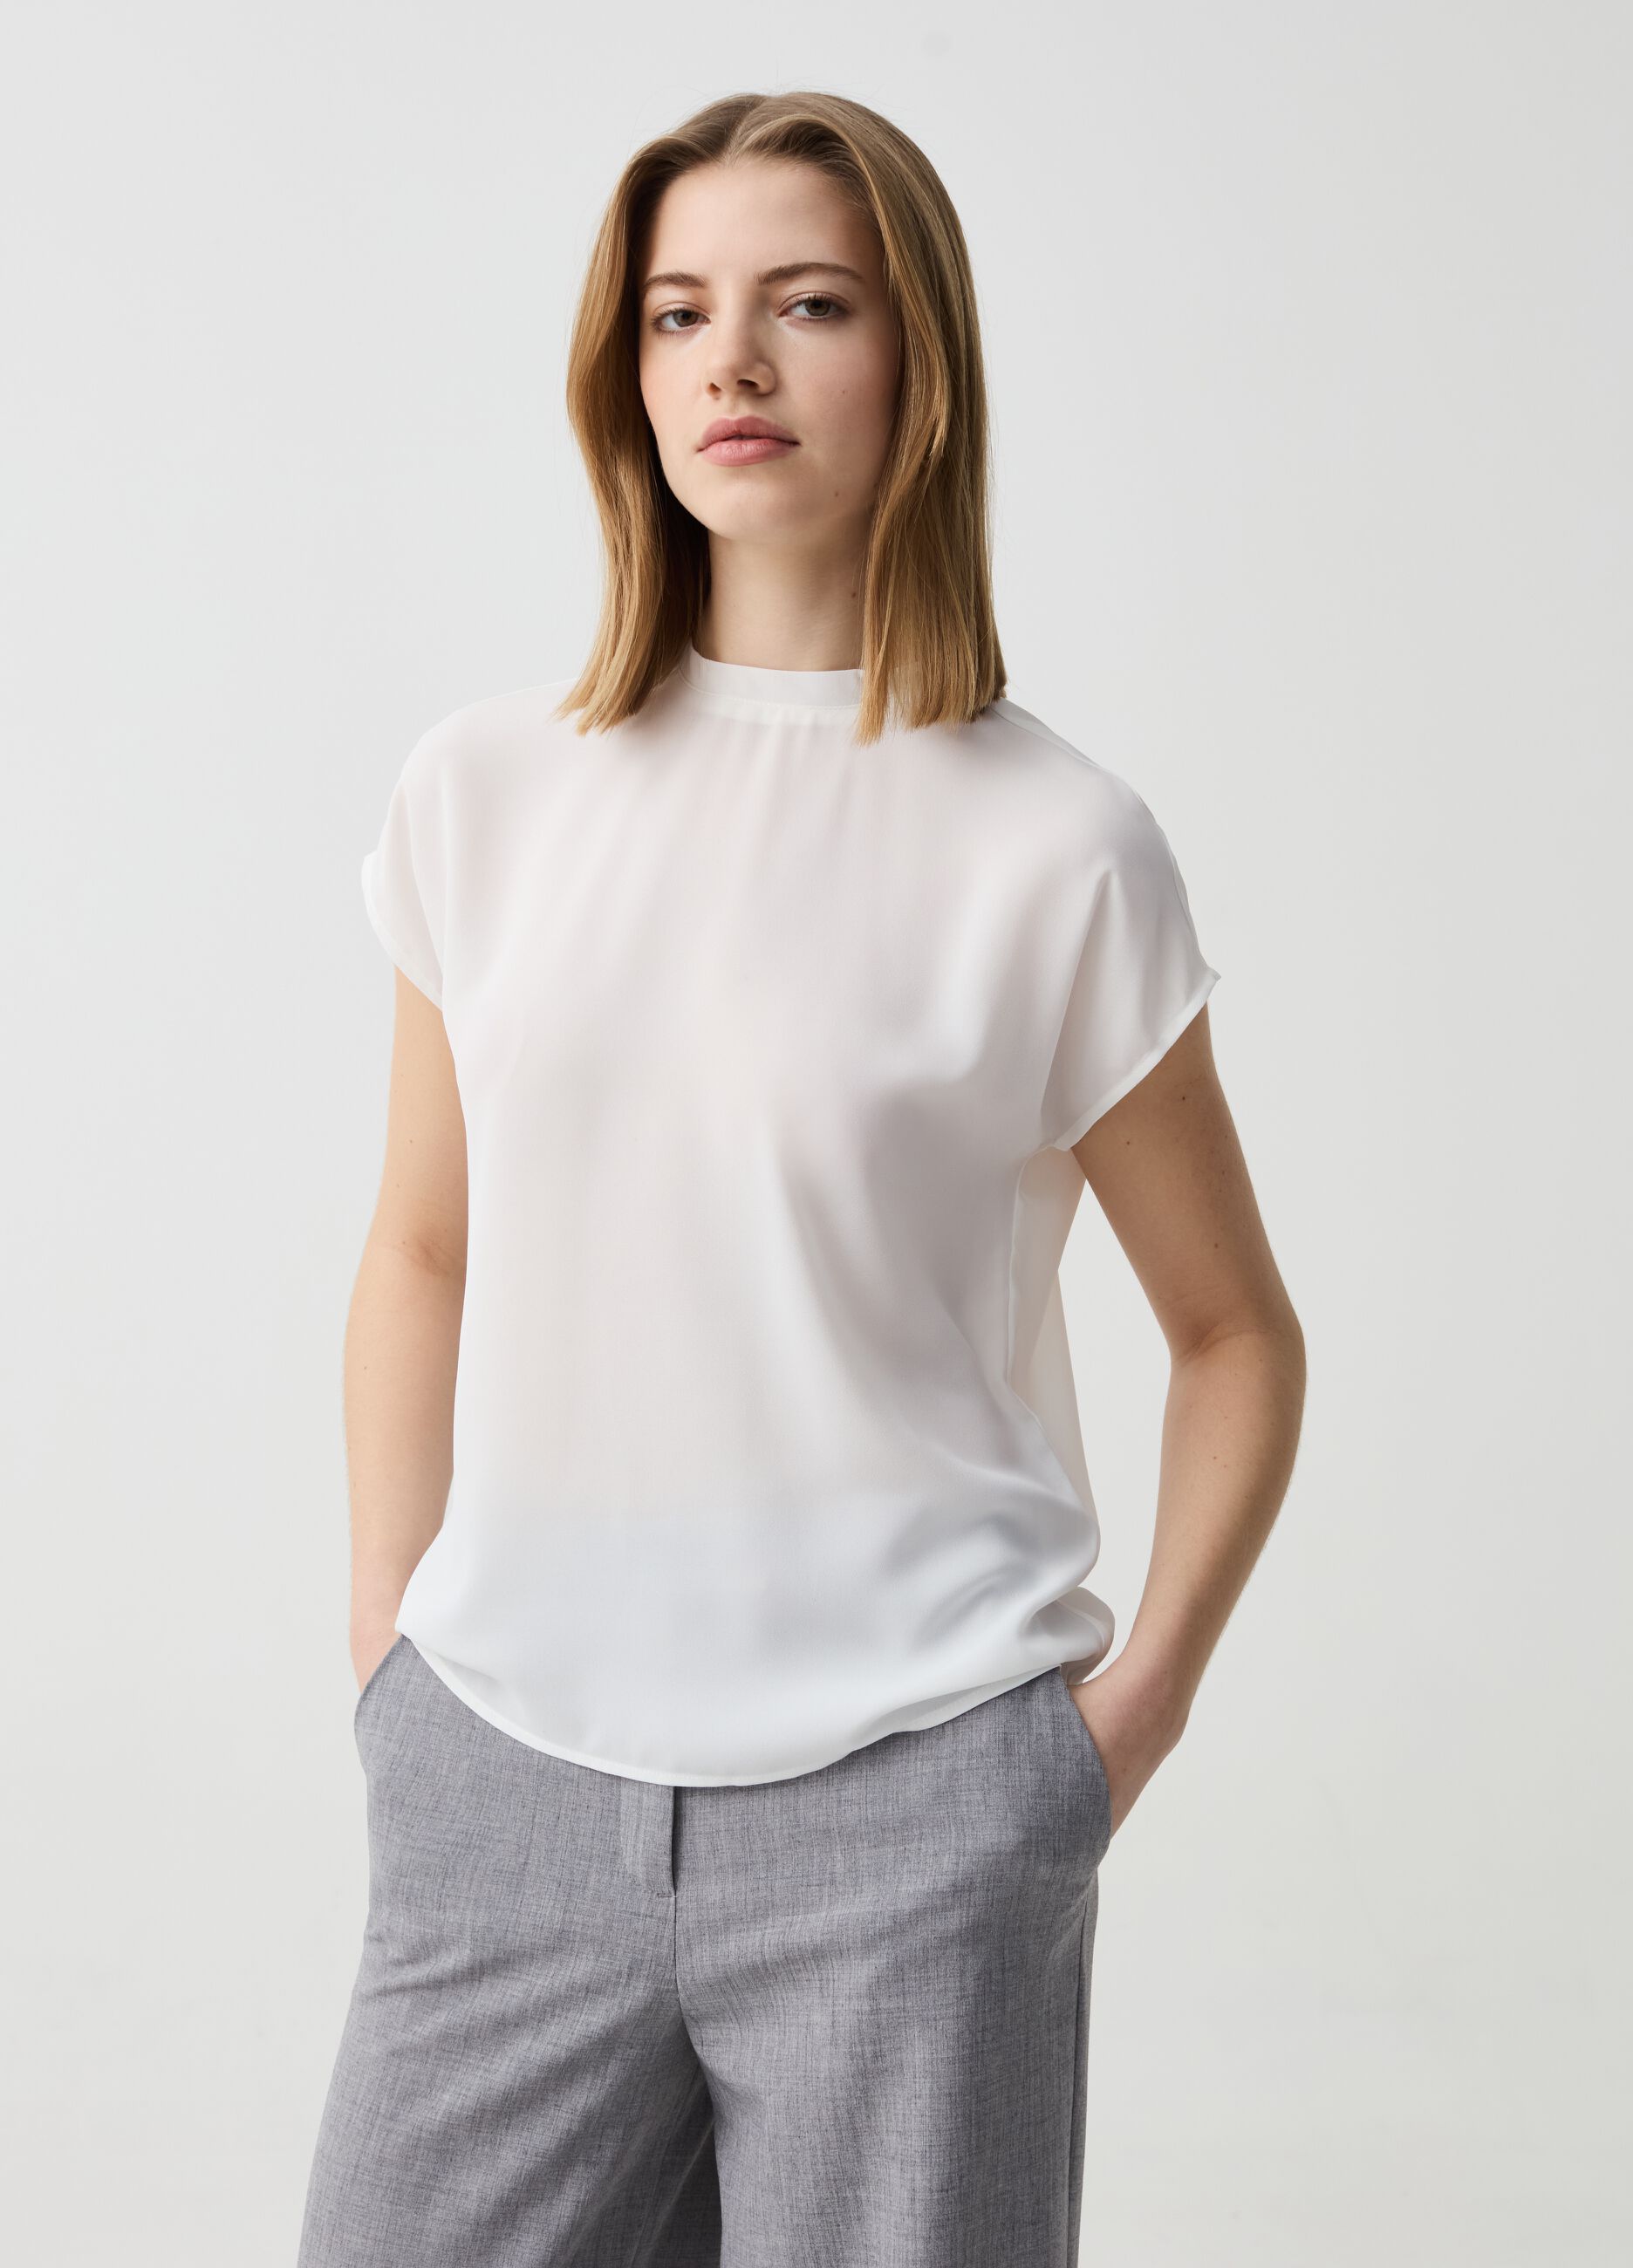 Short-sleeved blouse